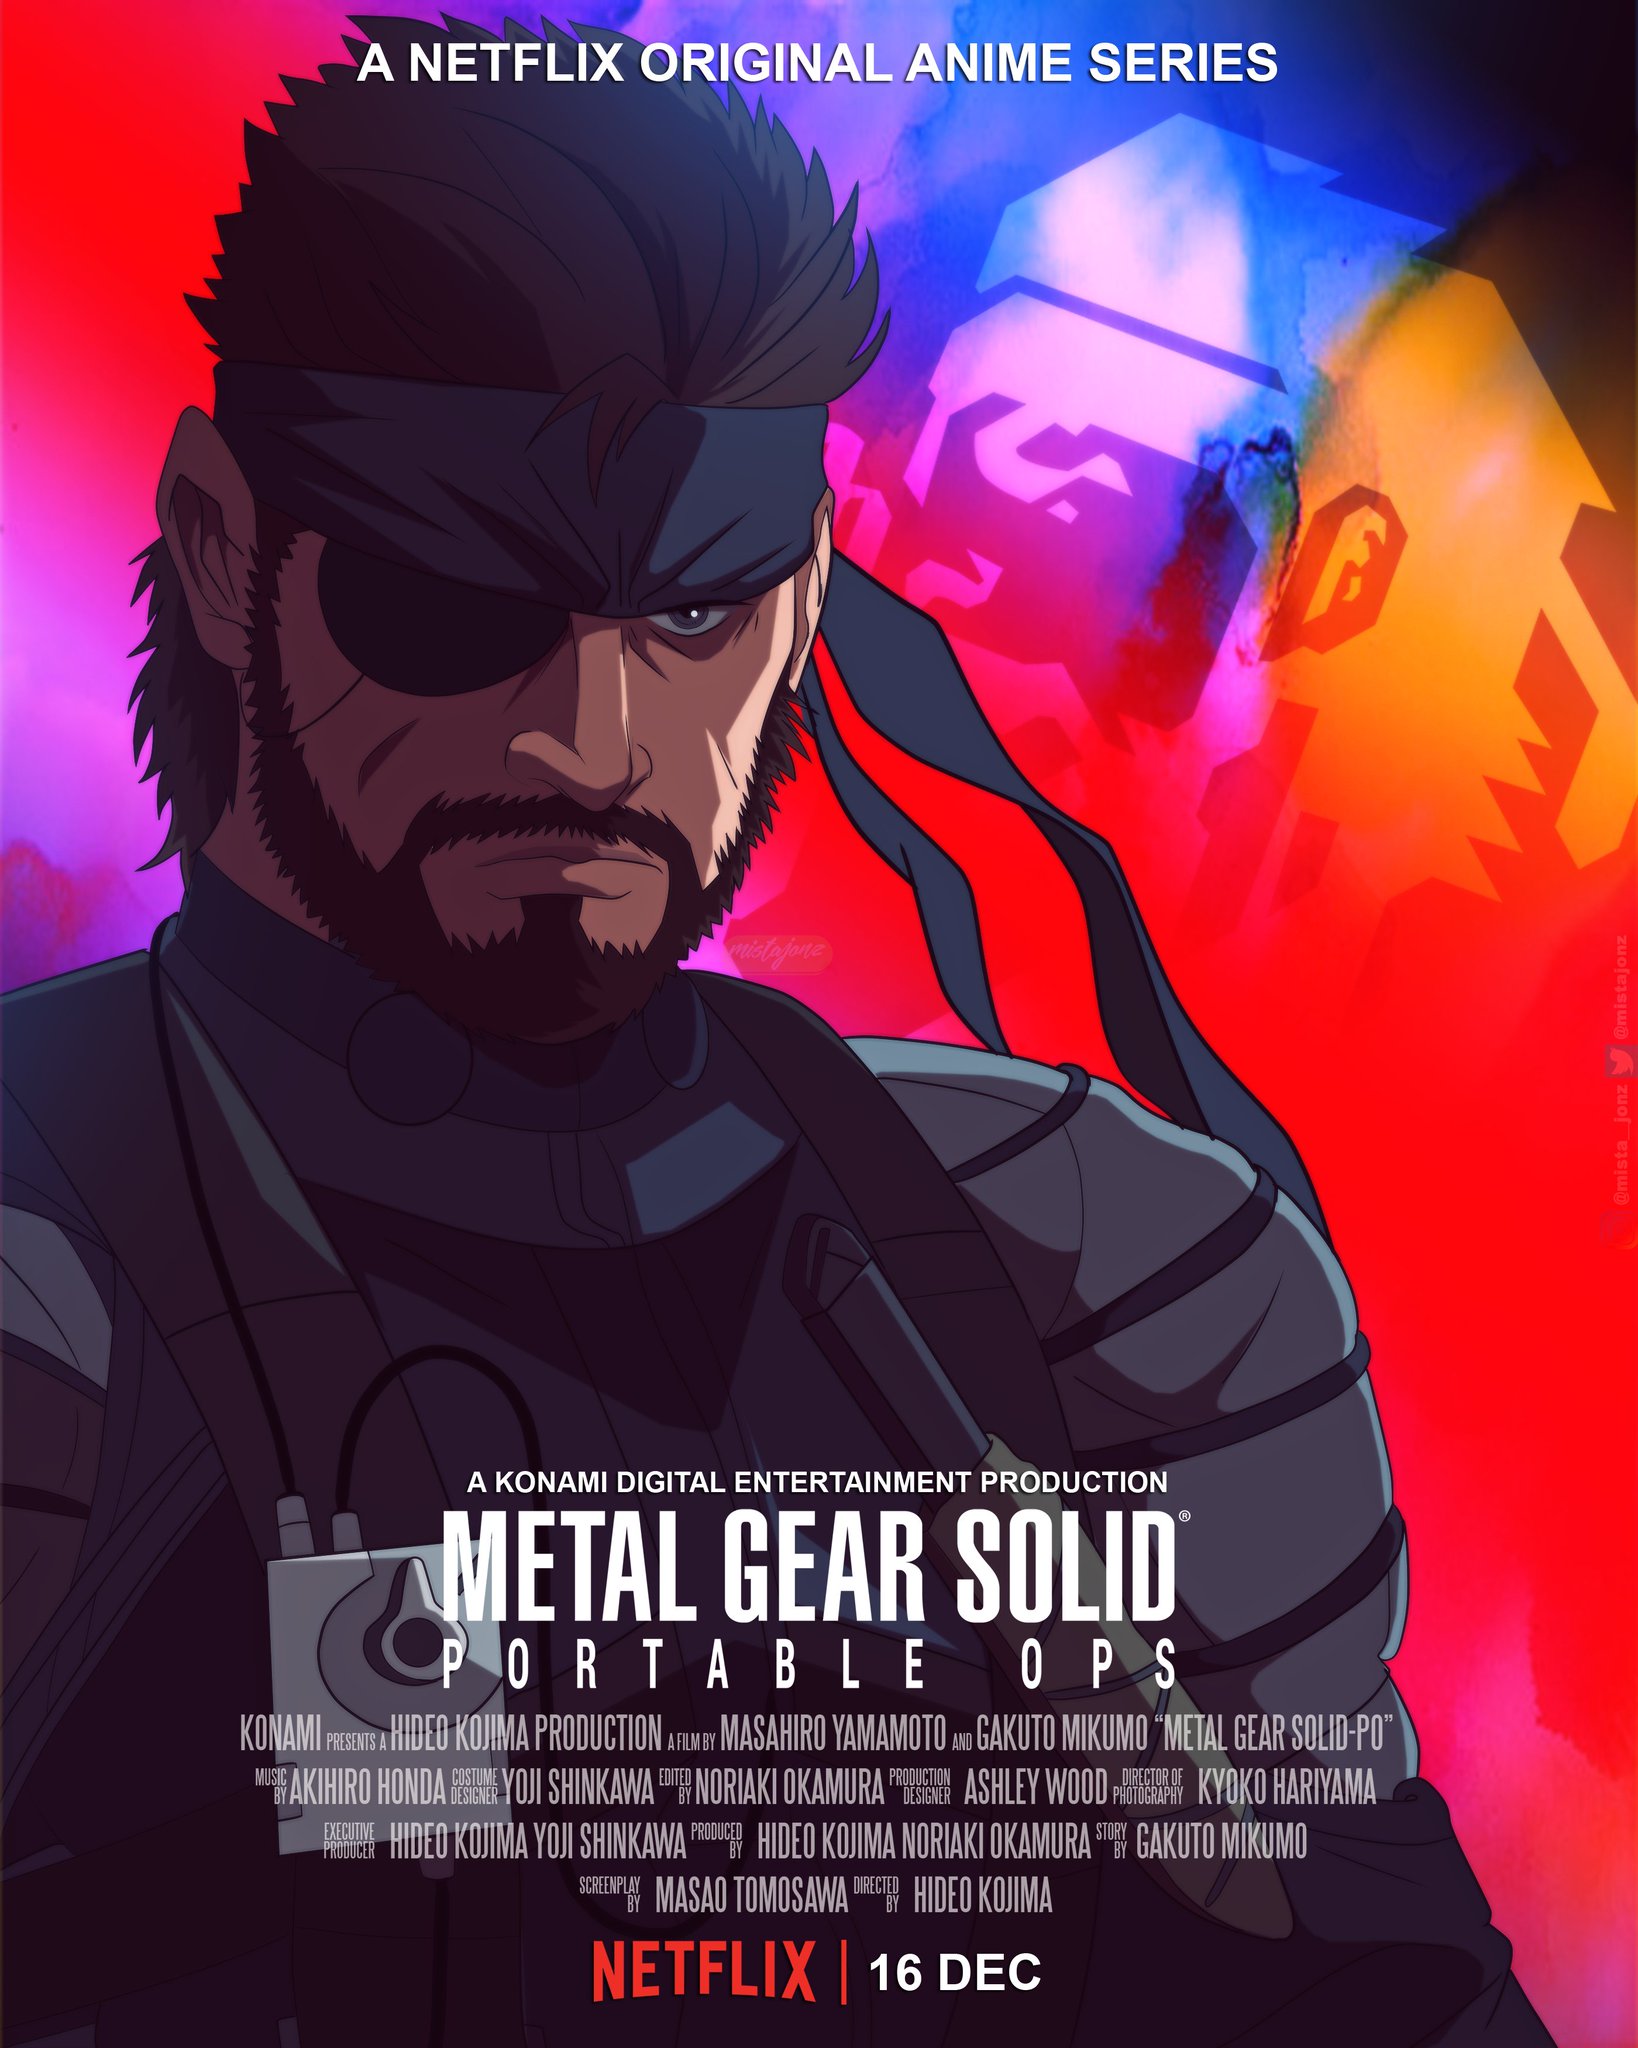 Metal gear solid on Netflix by @mistajonz : r/metalgearsolid